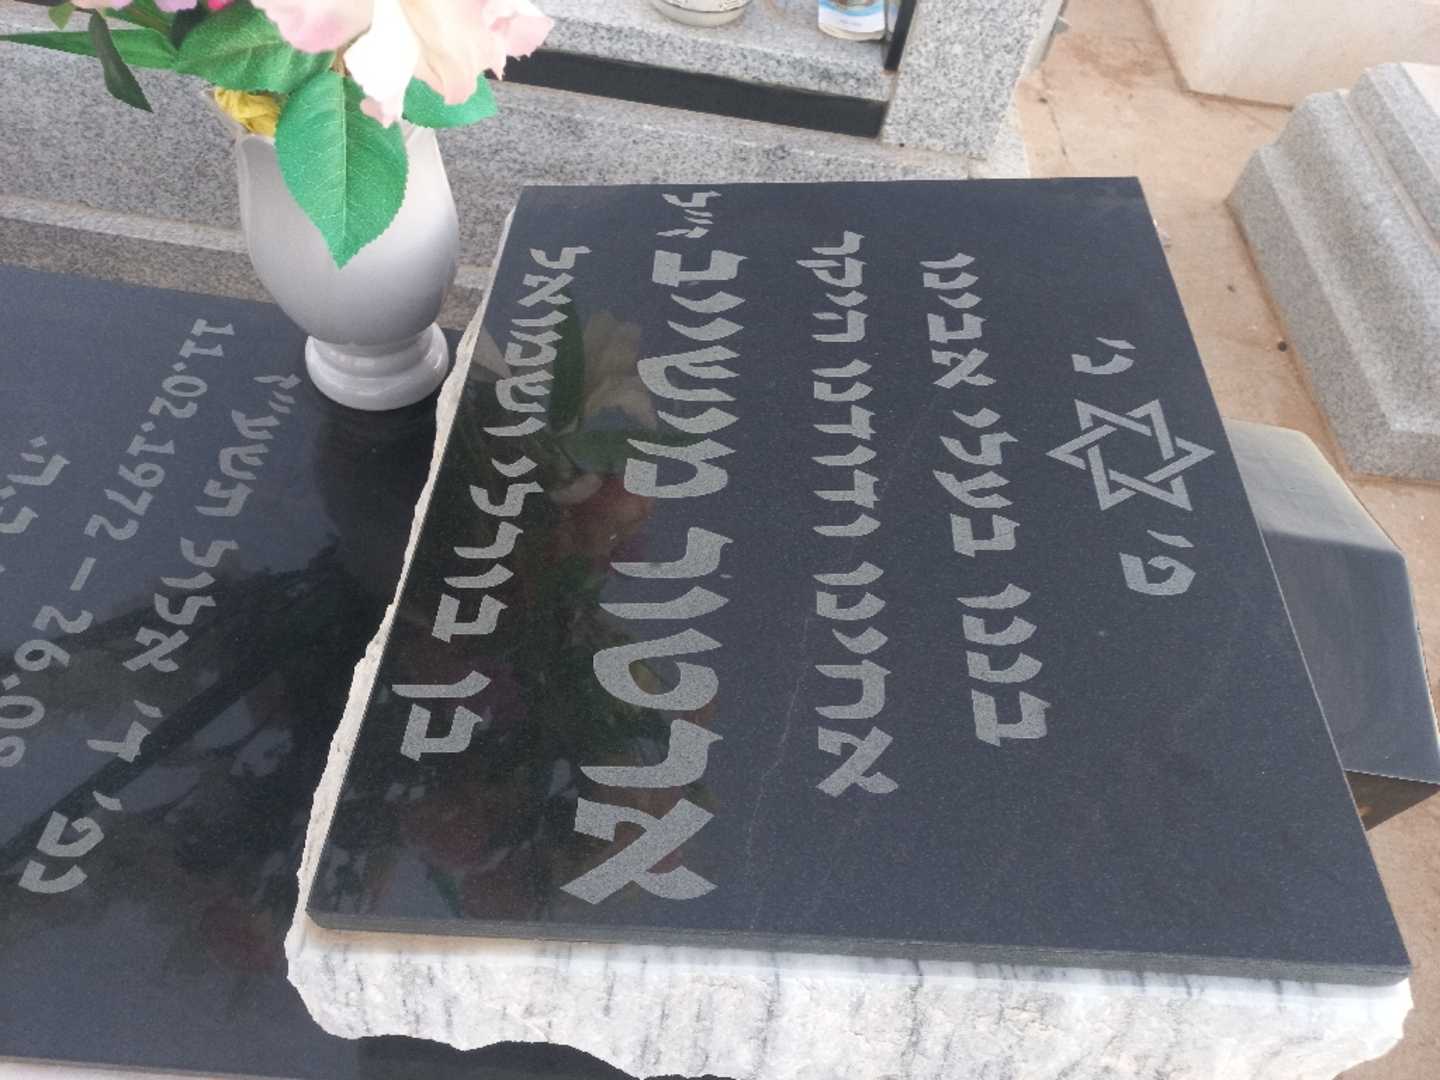 קברו של ארטור מישייב. תמונה 2